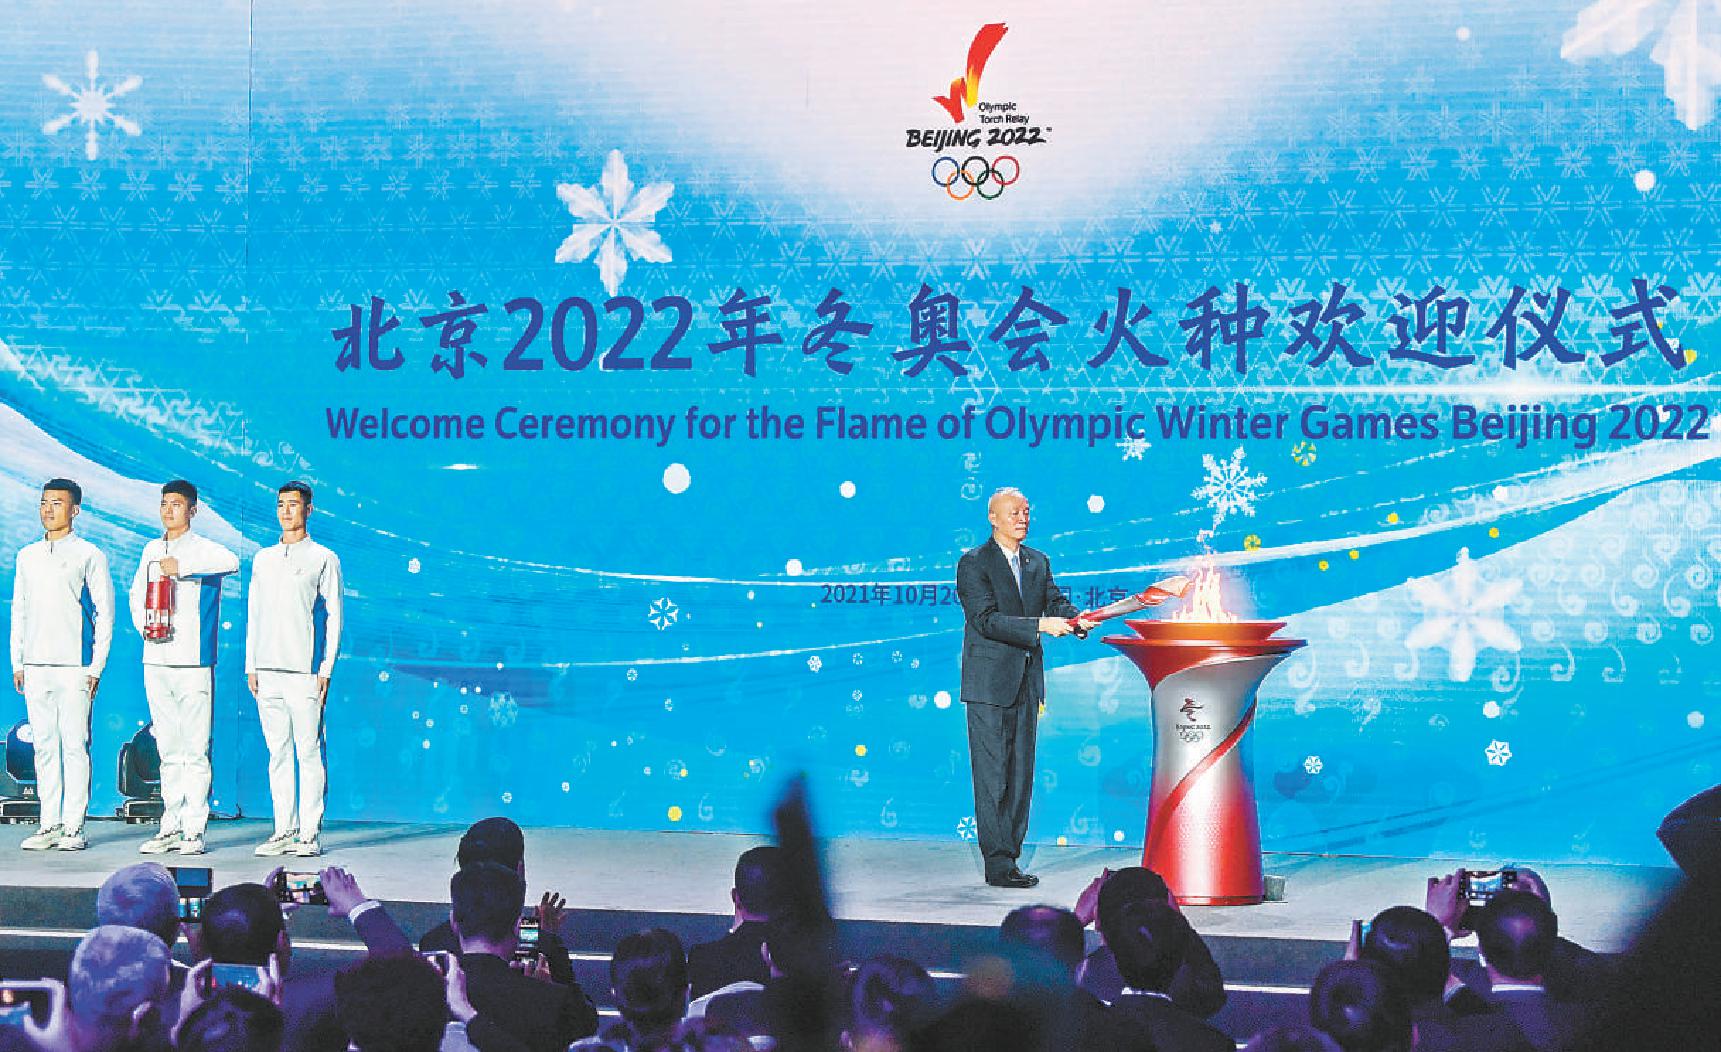 北京2022年冬奧會火種歡迎儀式在京舉行